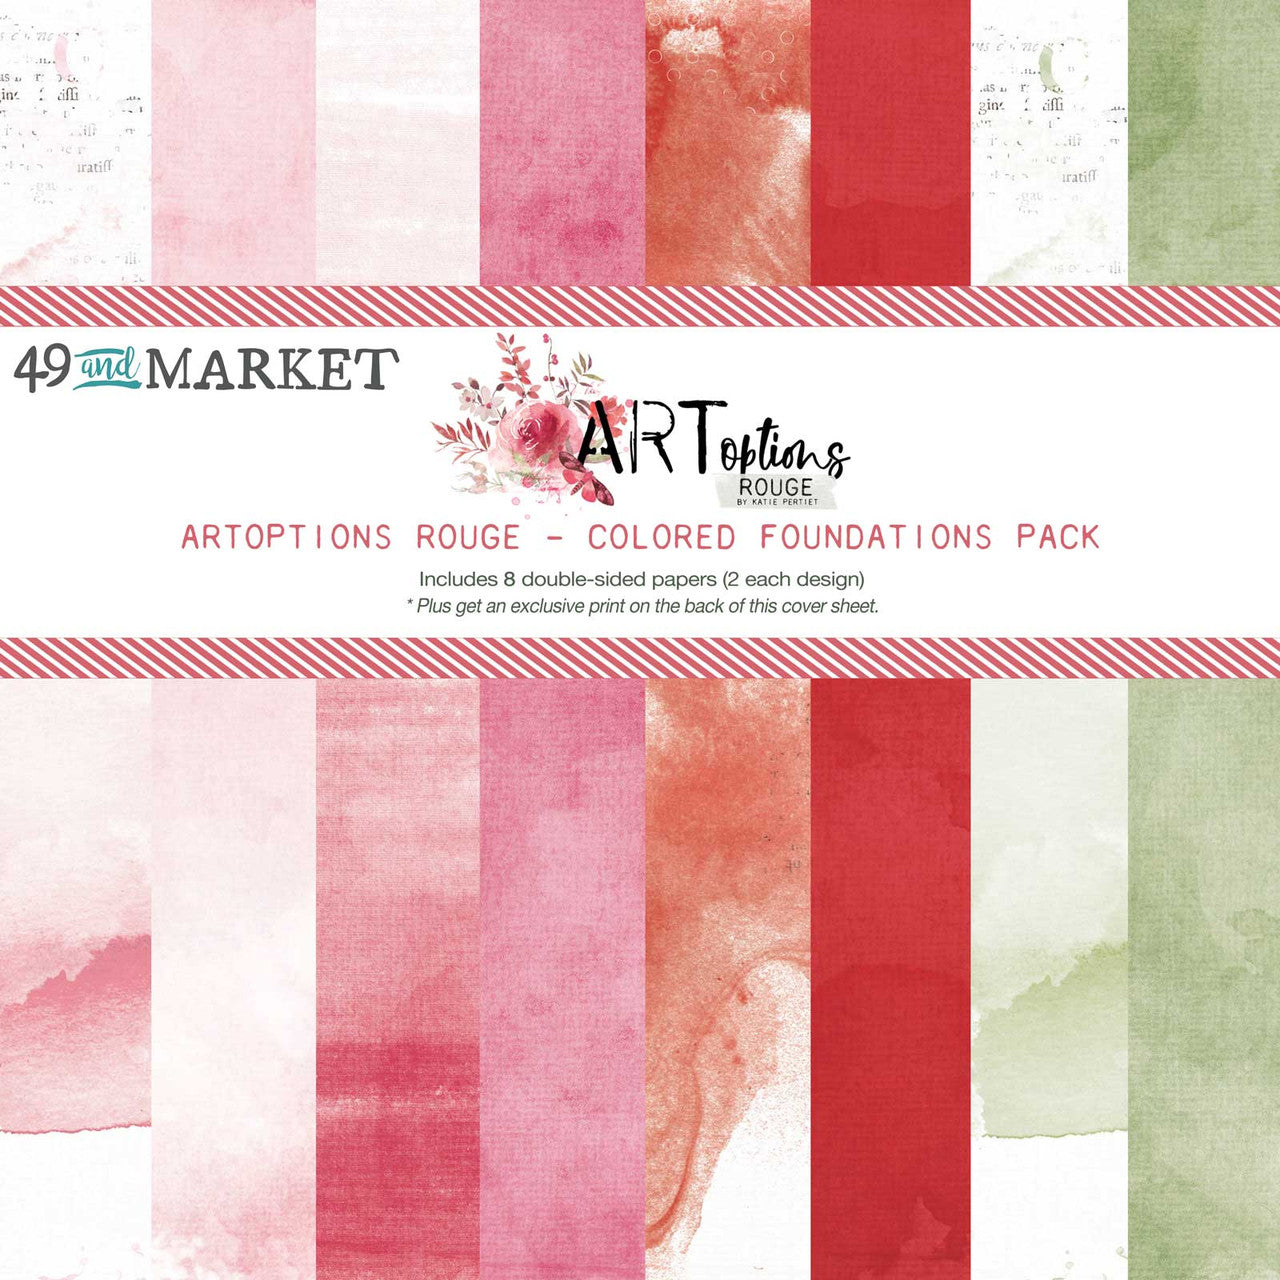 49 and Market ARToptions Rouge Paquete de bases de colores de 12 x 12